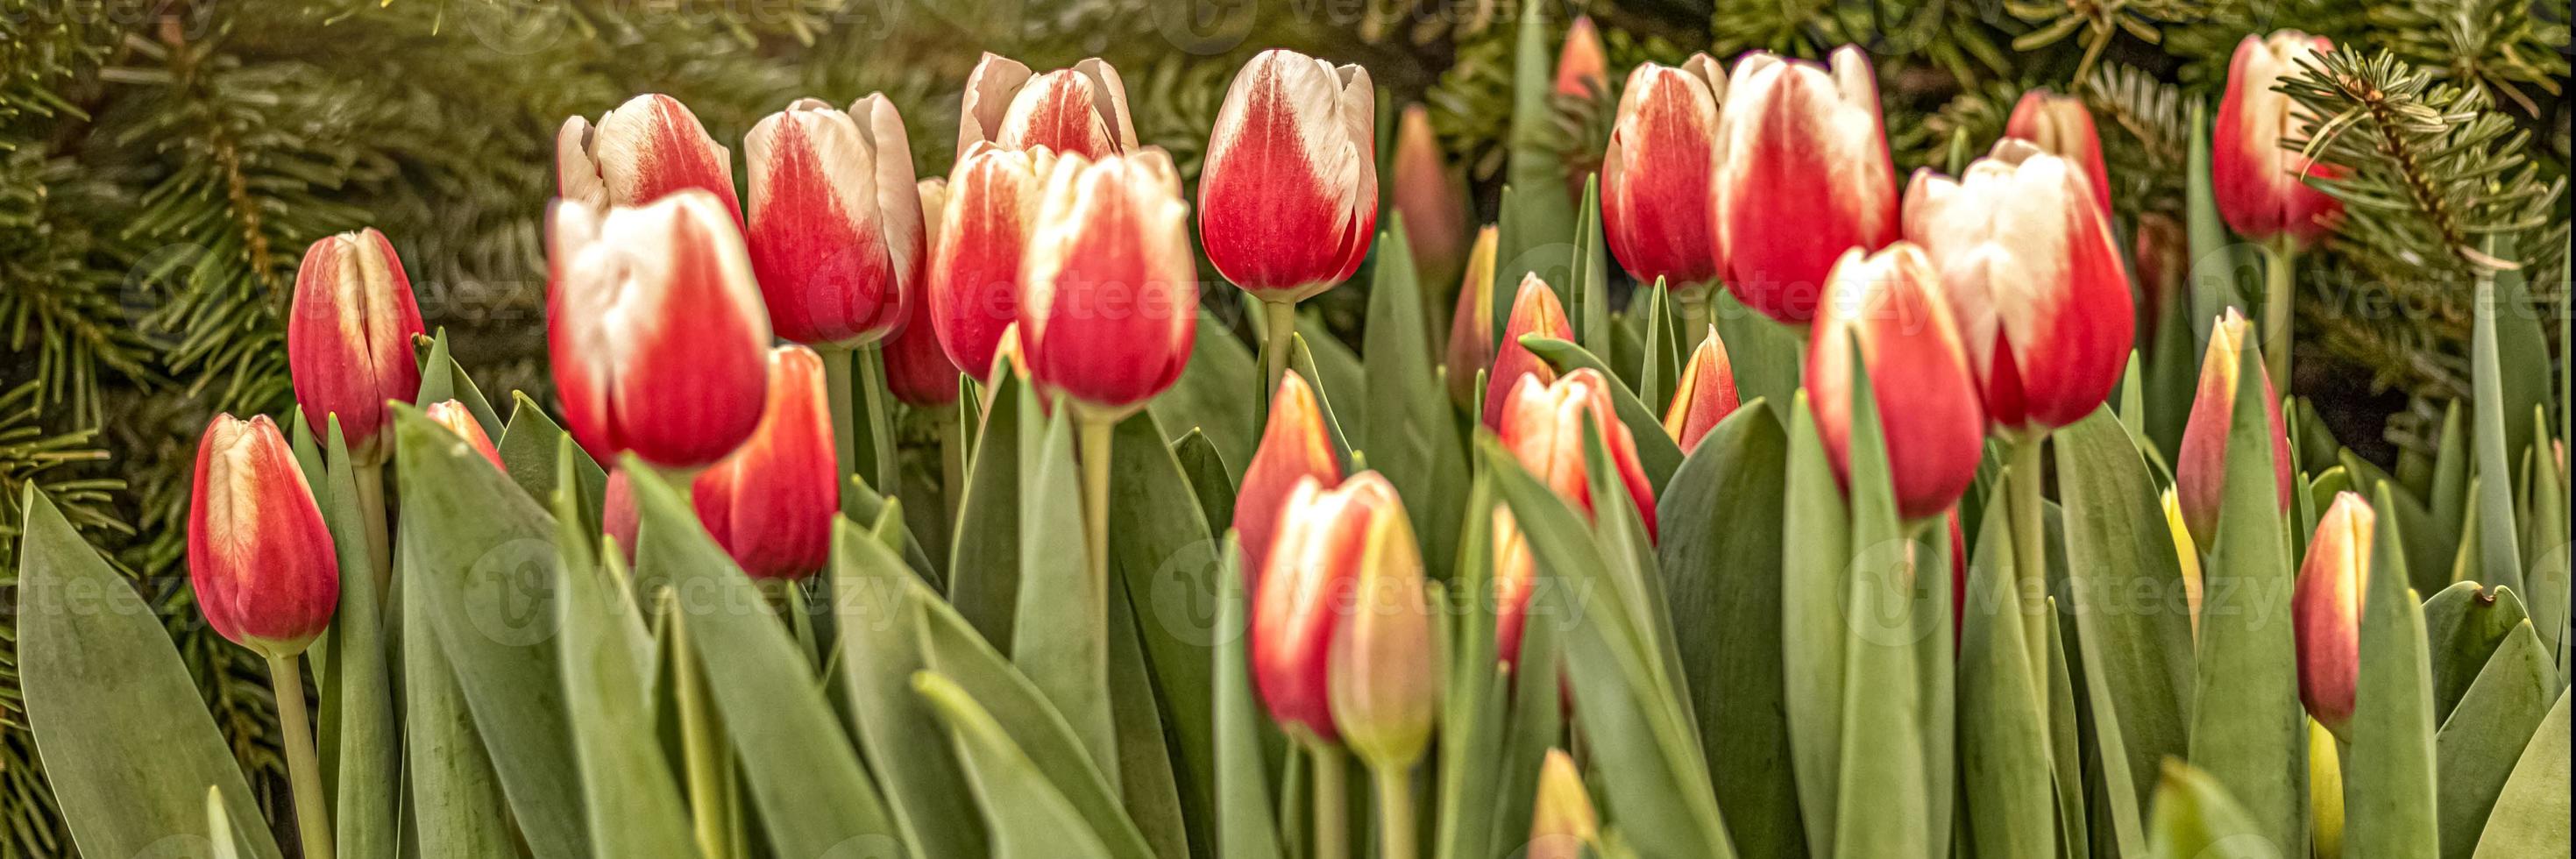 rote Tulpen auf einem Blumenbeet im Garten. Frühling. blühende.sonnenuntergang.banner foto